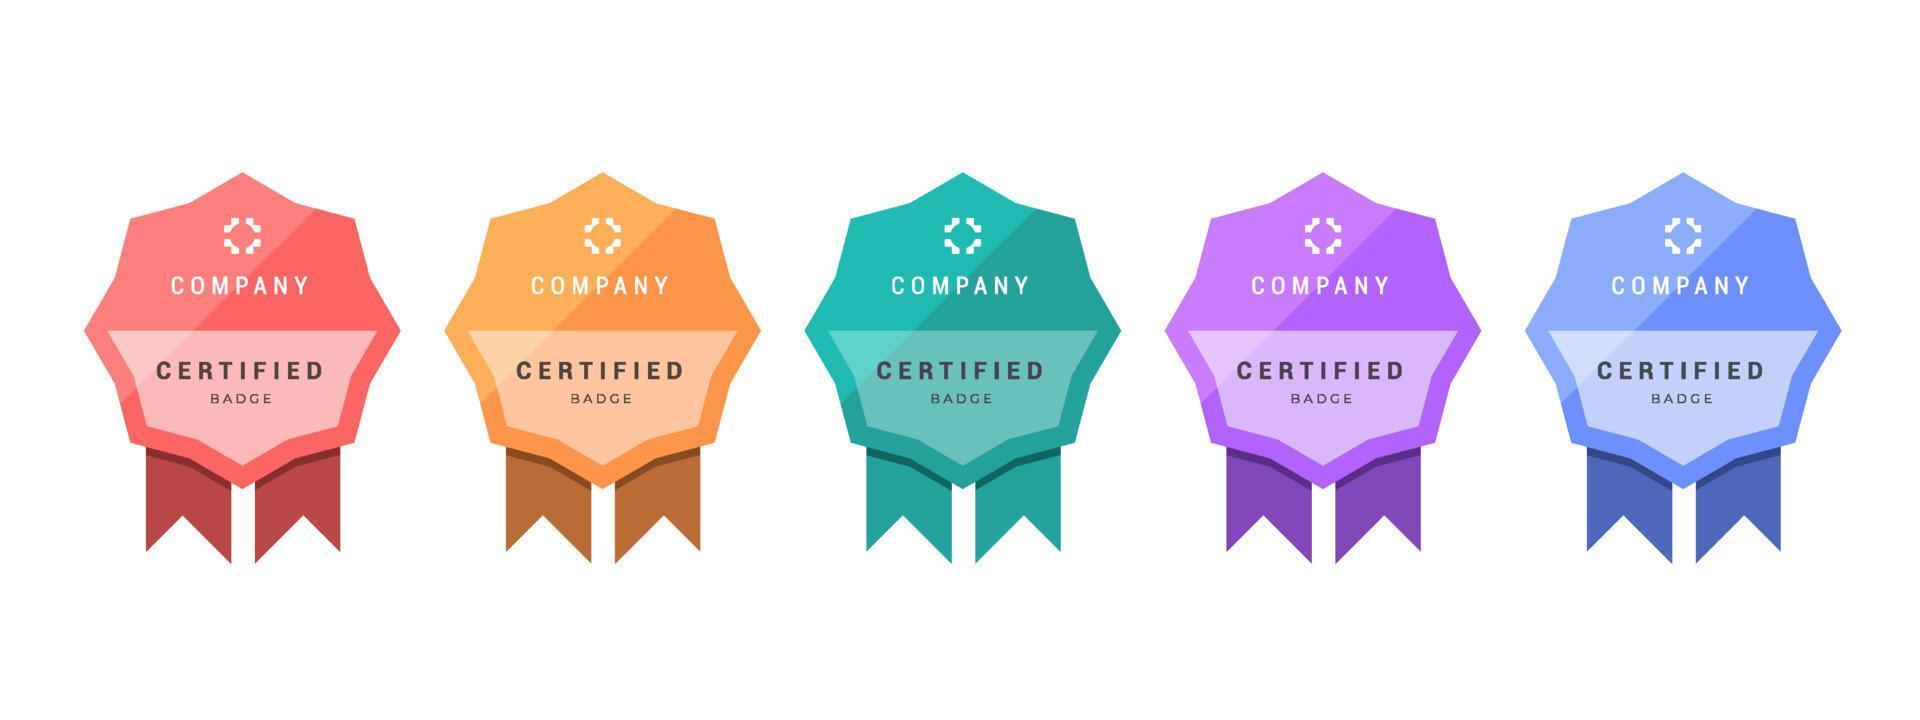 logotypmärke för certifikattekniker, analytiker, internet, data, konferens, etc. digitalt certifierad logotyp verifierad bedrift eller företag med geometribanddesign. vektor illustration.